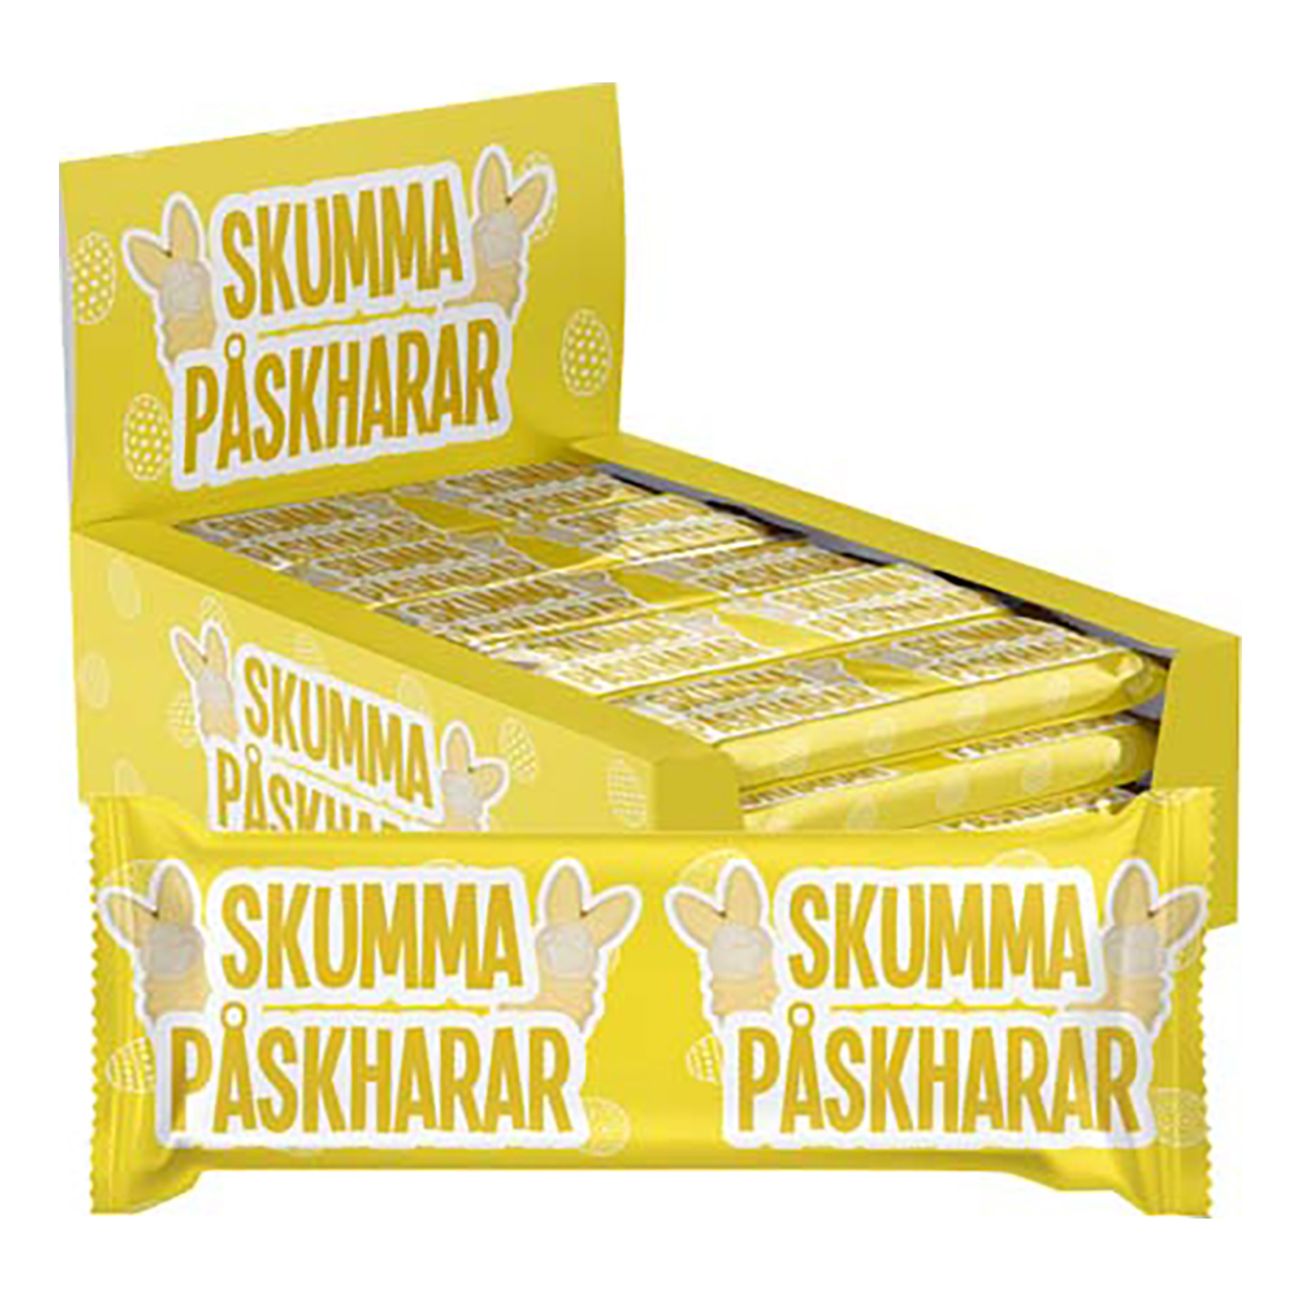 skumma-paskharar-storpack-83230-2